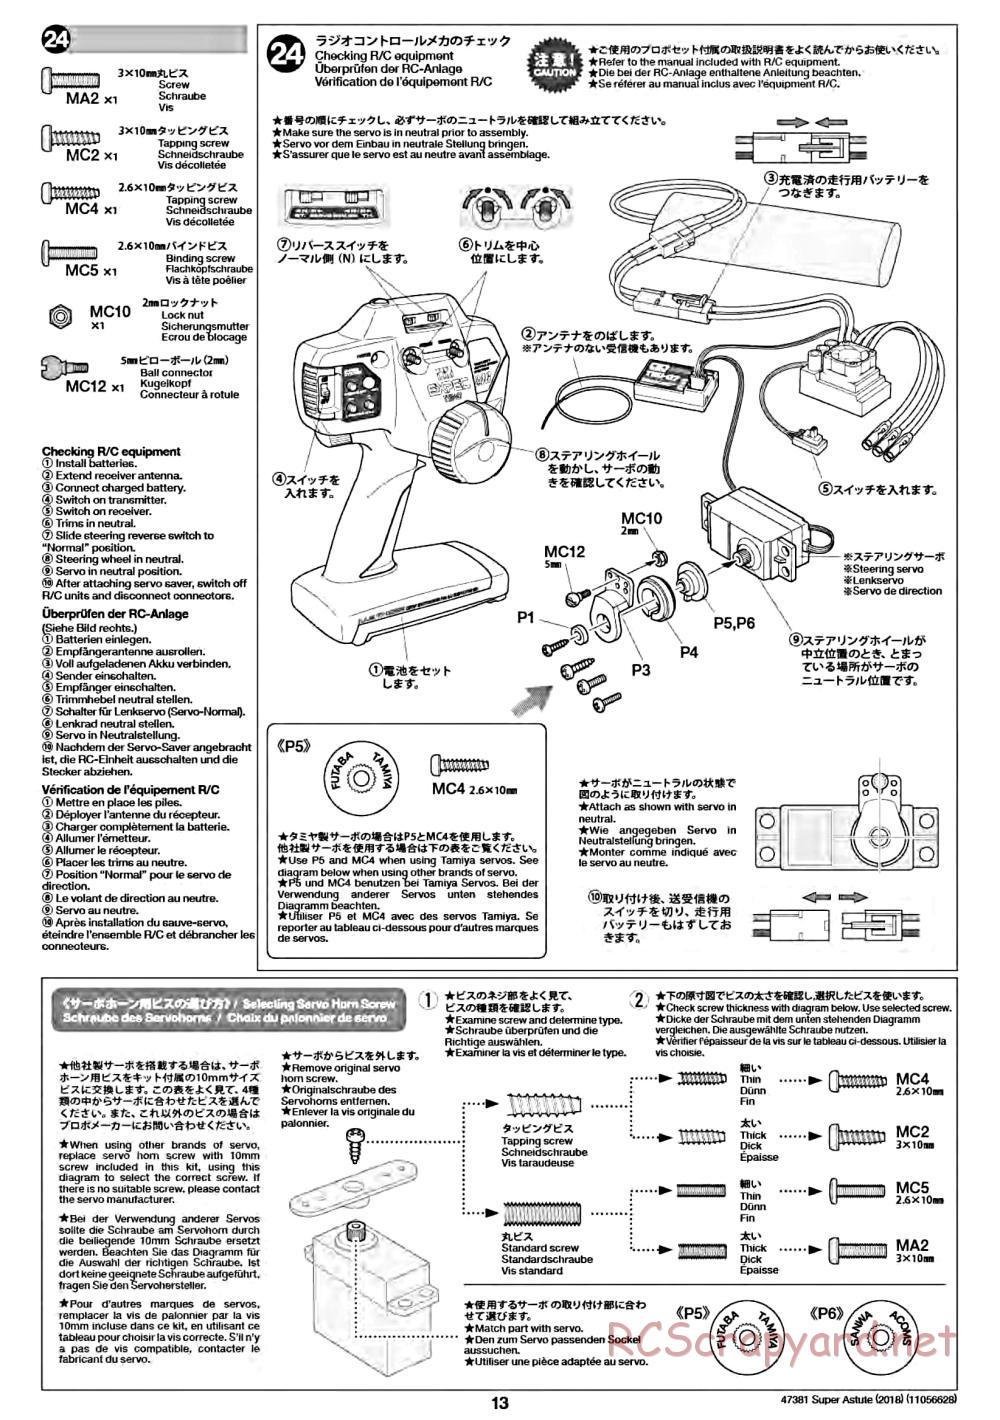 Tamiya - Super Astute (2018) Chassis - Manual - Page 13